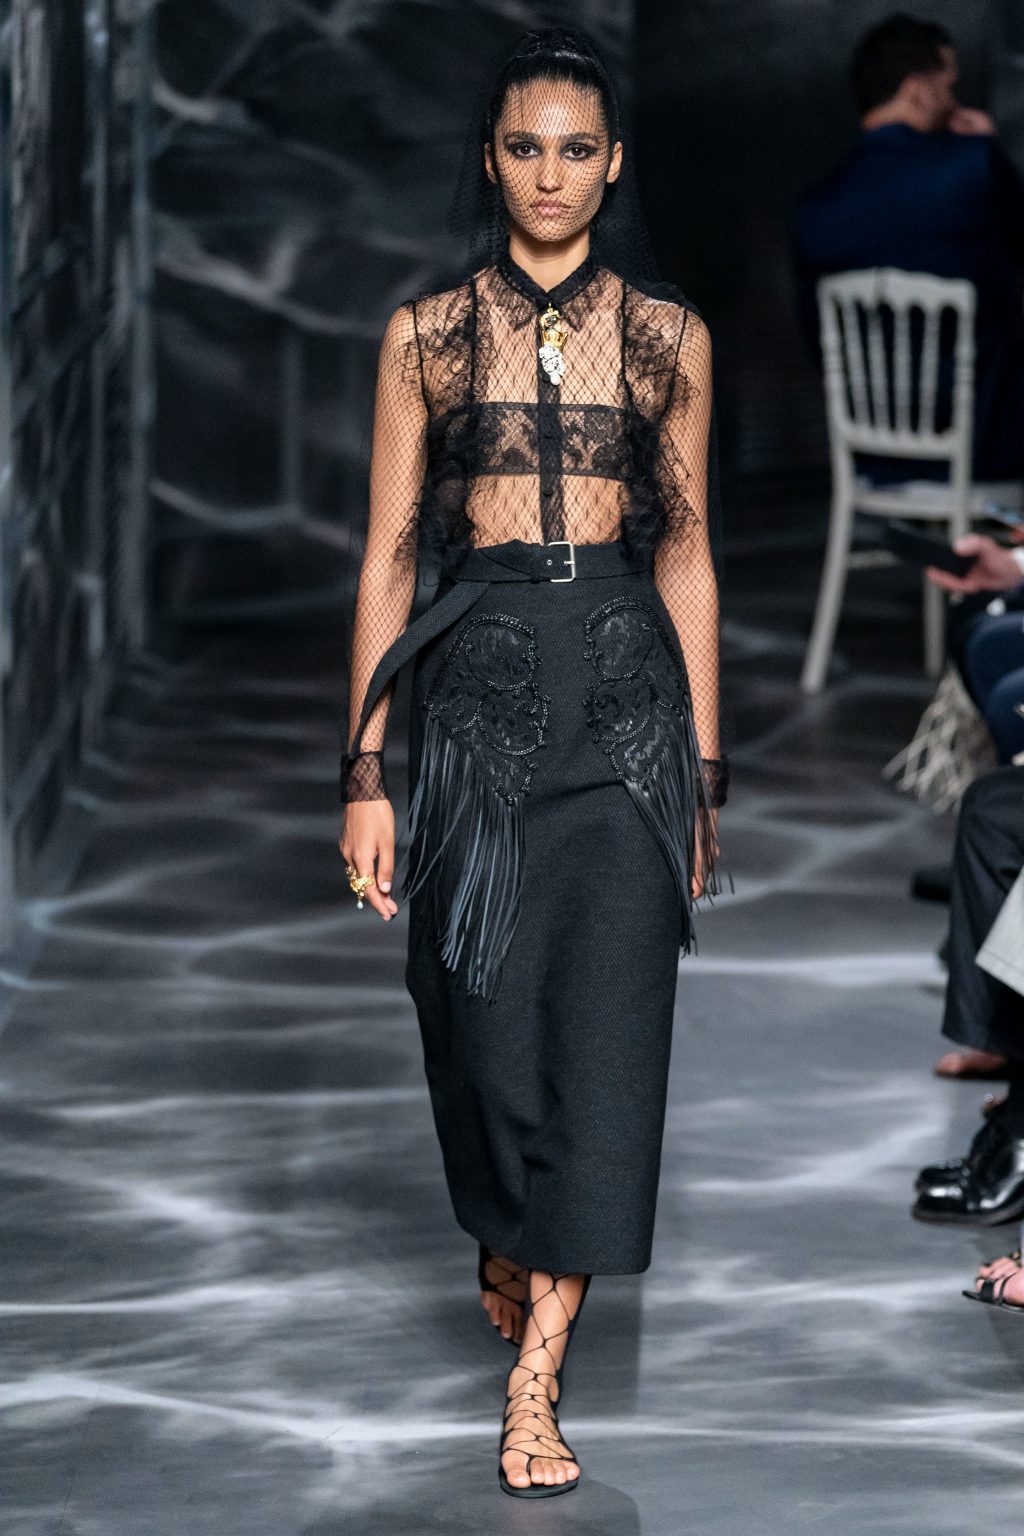 áo phối ren và chân váy đen bộ sưu tập Dior Haute Couture Thu 2019